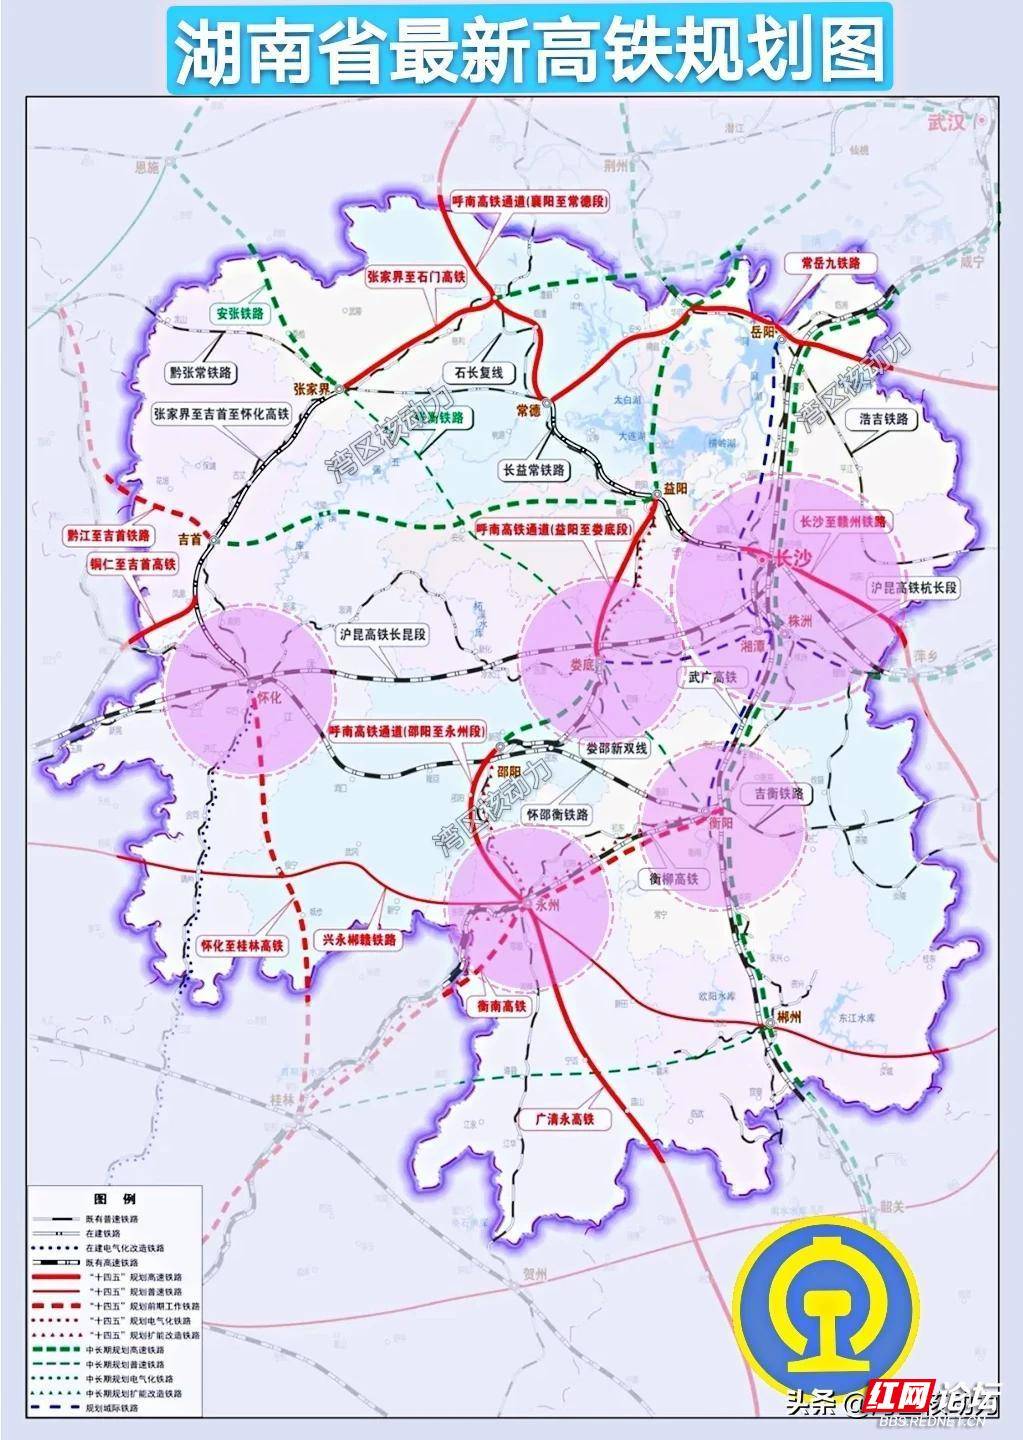 湖南省最新高铁规划示意图一个中心,四个基本点"的架构体系